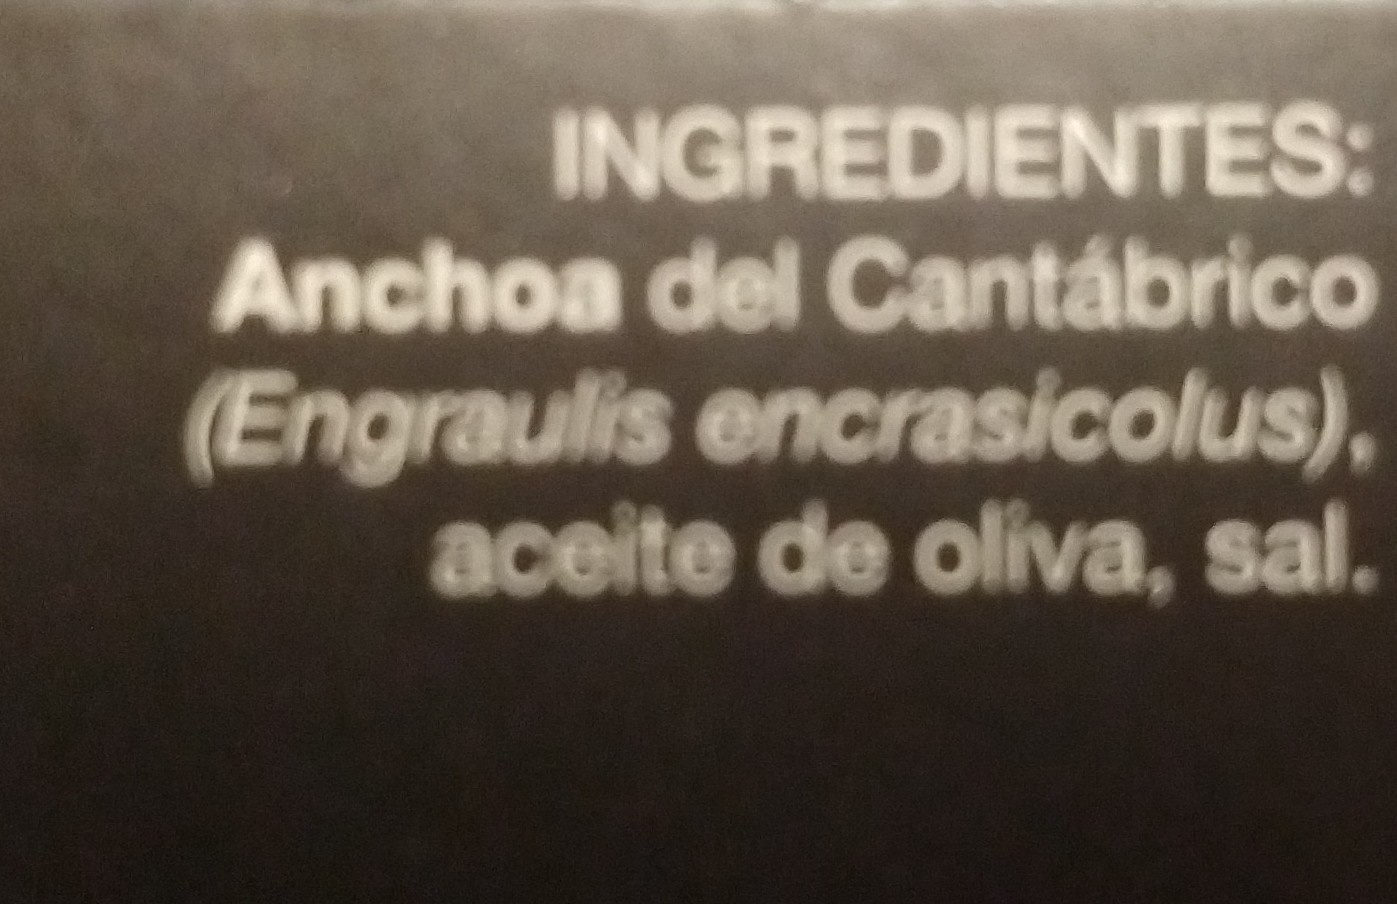 Gourmet filetes de anchoa del cantábrico bajo - Ingredients - es